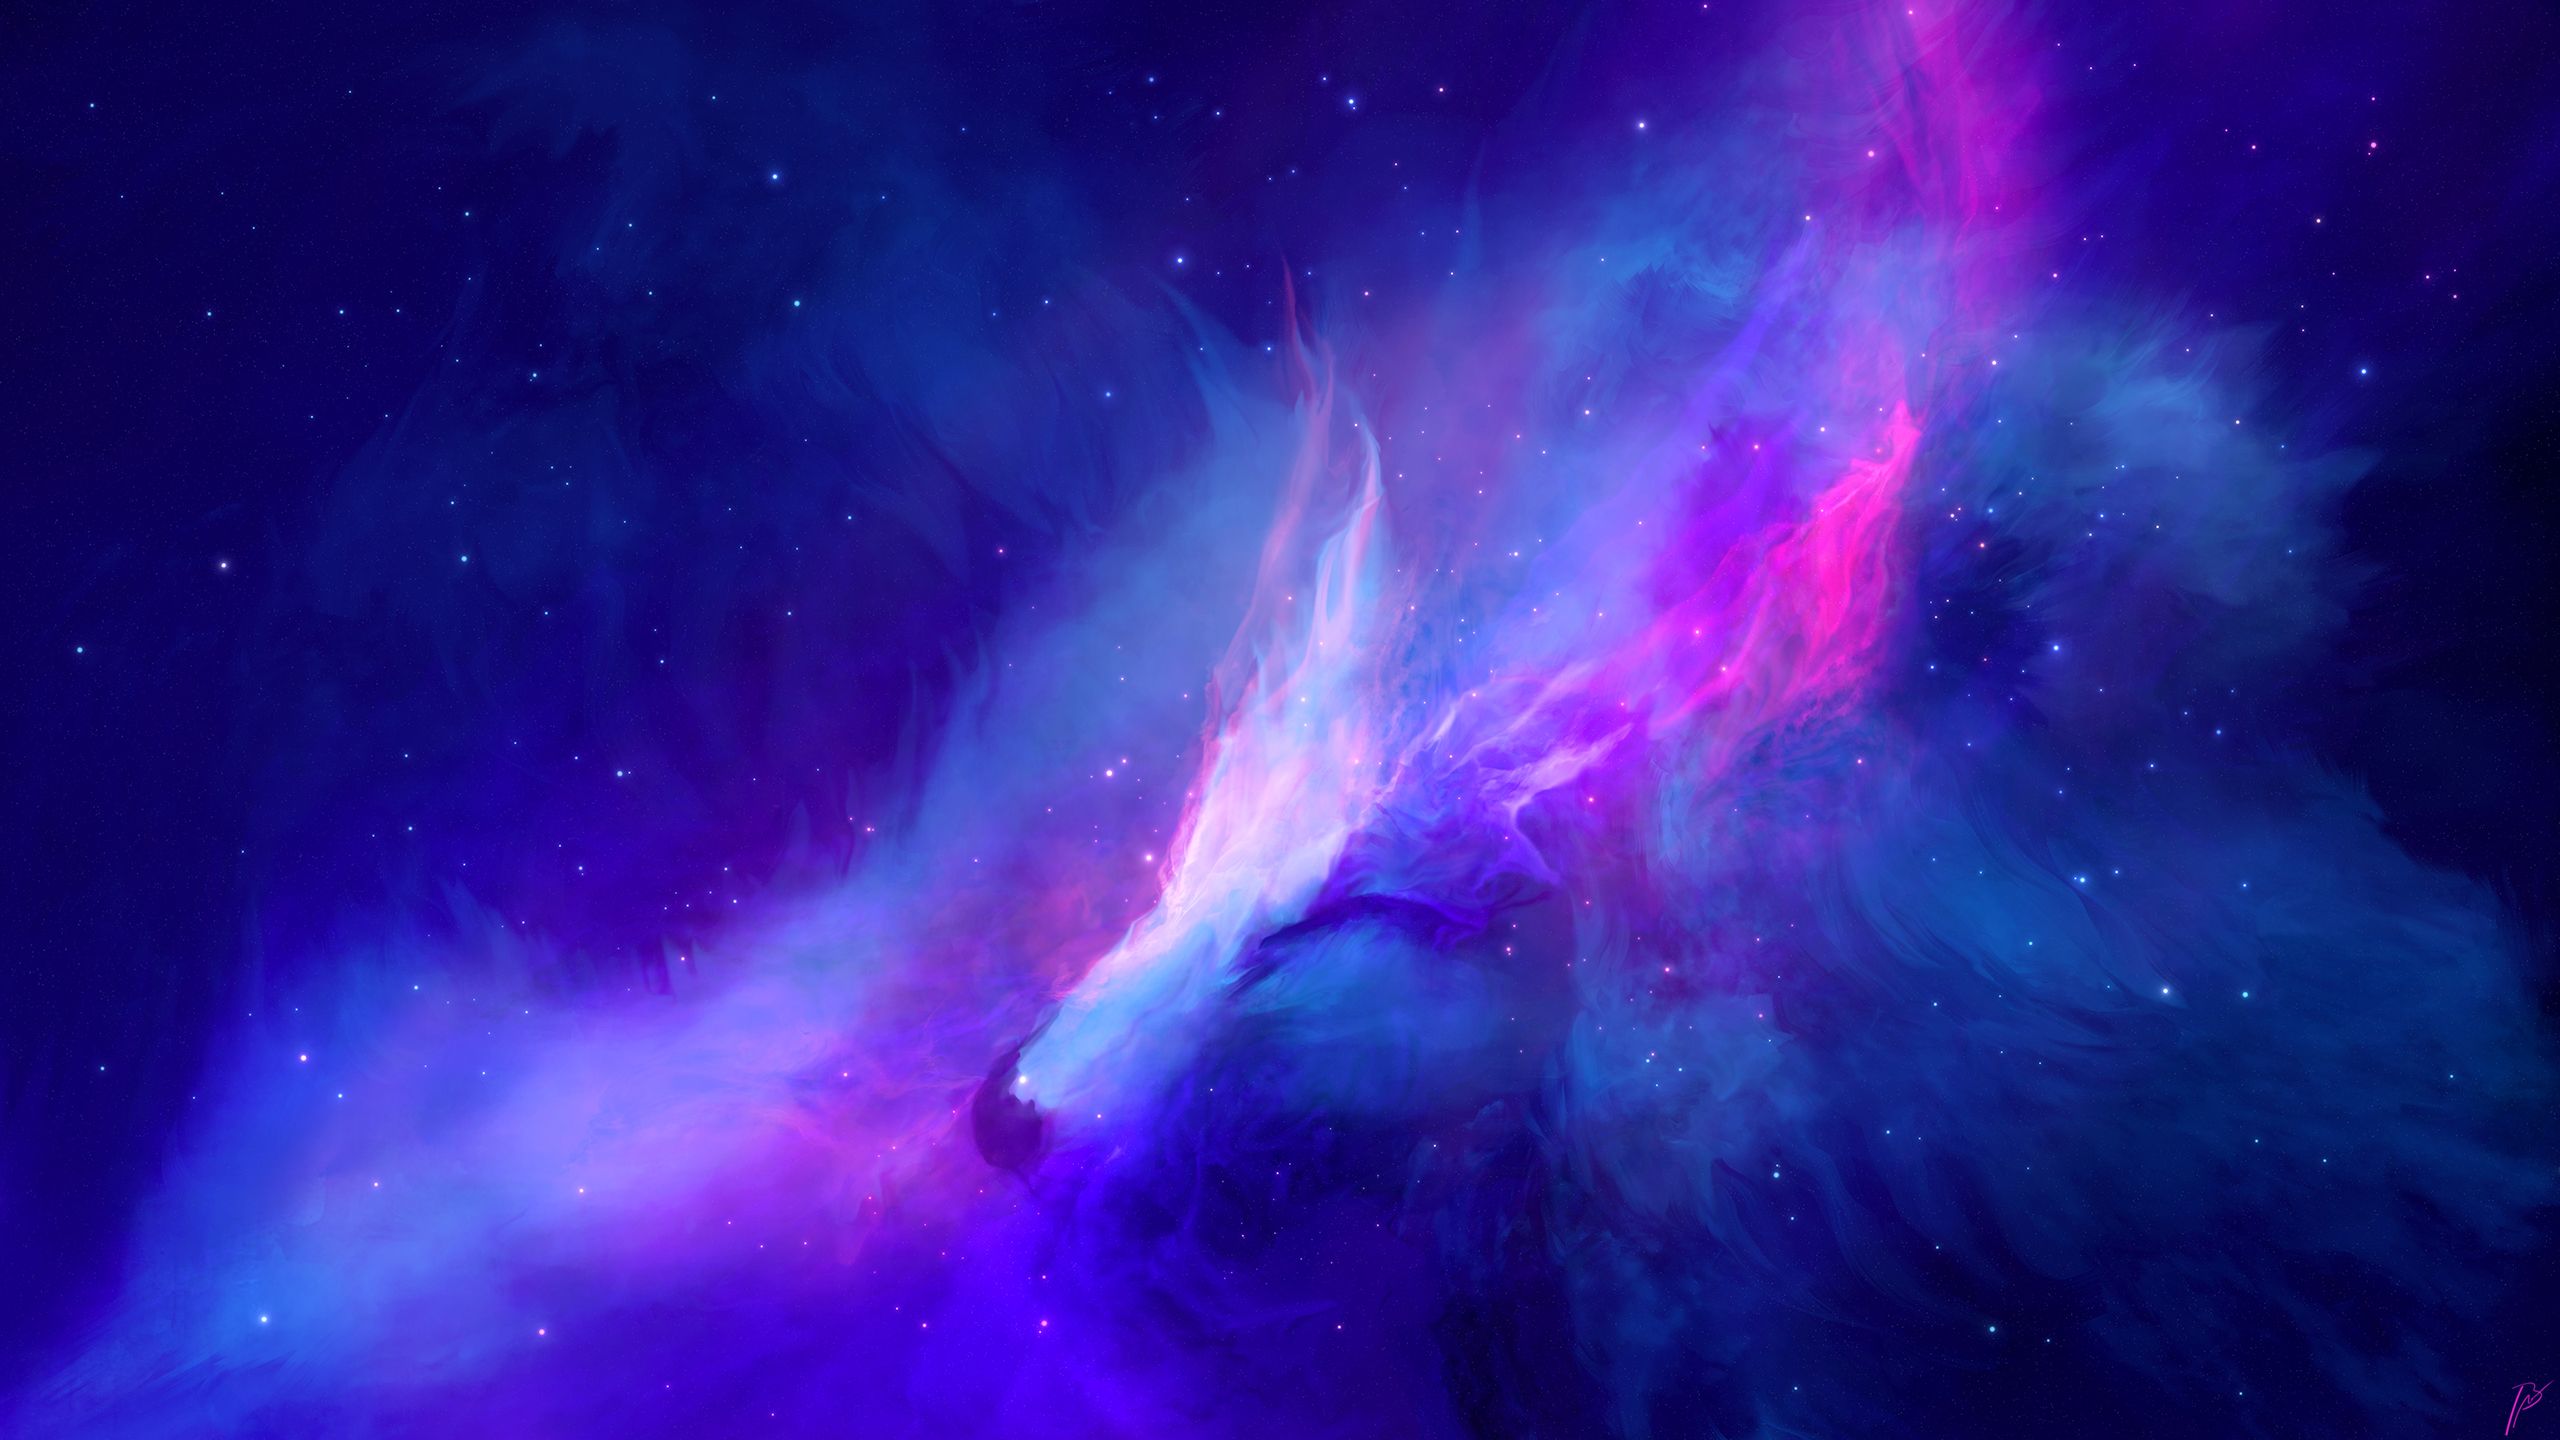 Nebula Wallpapers 4k Hd Nebula Backgrounds On Wallpaperbat 8746